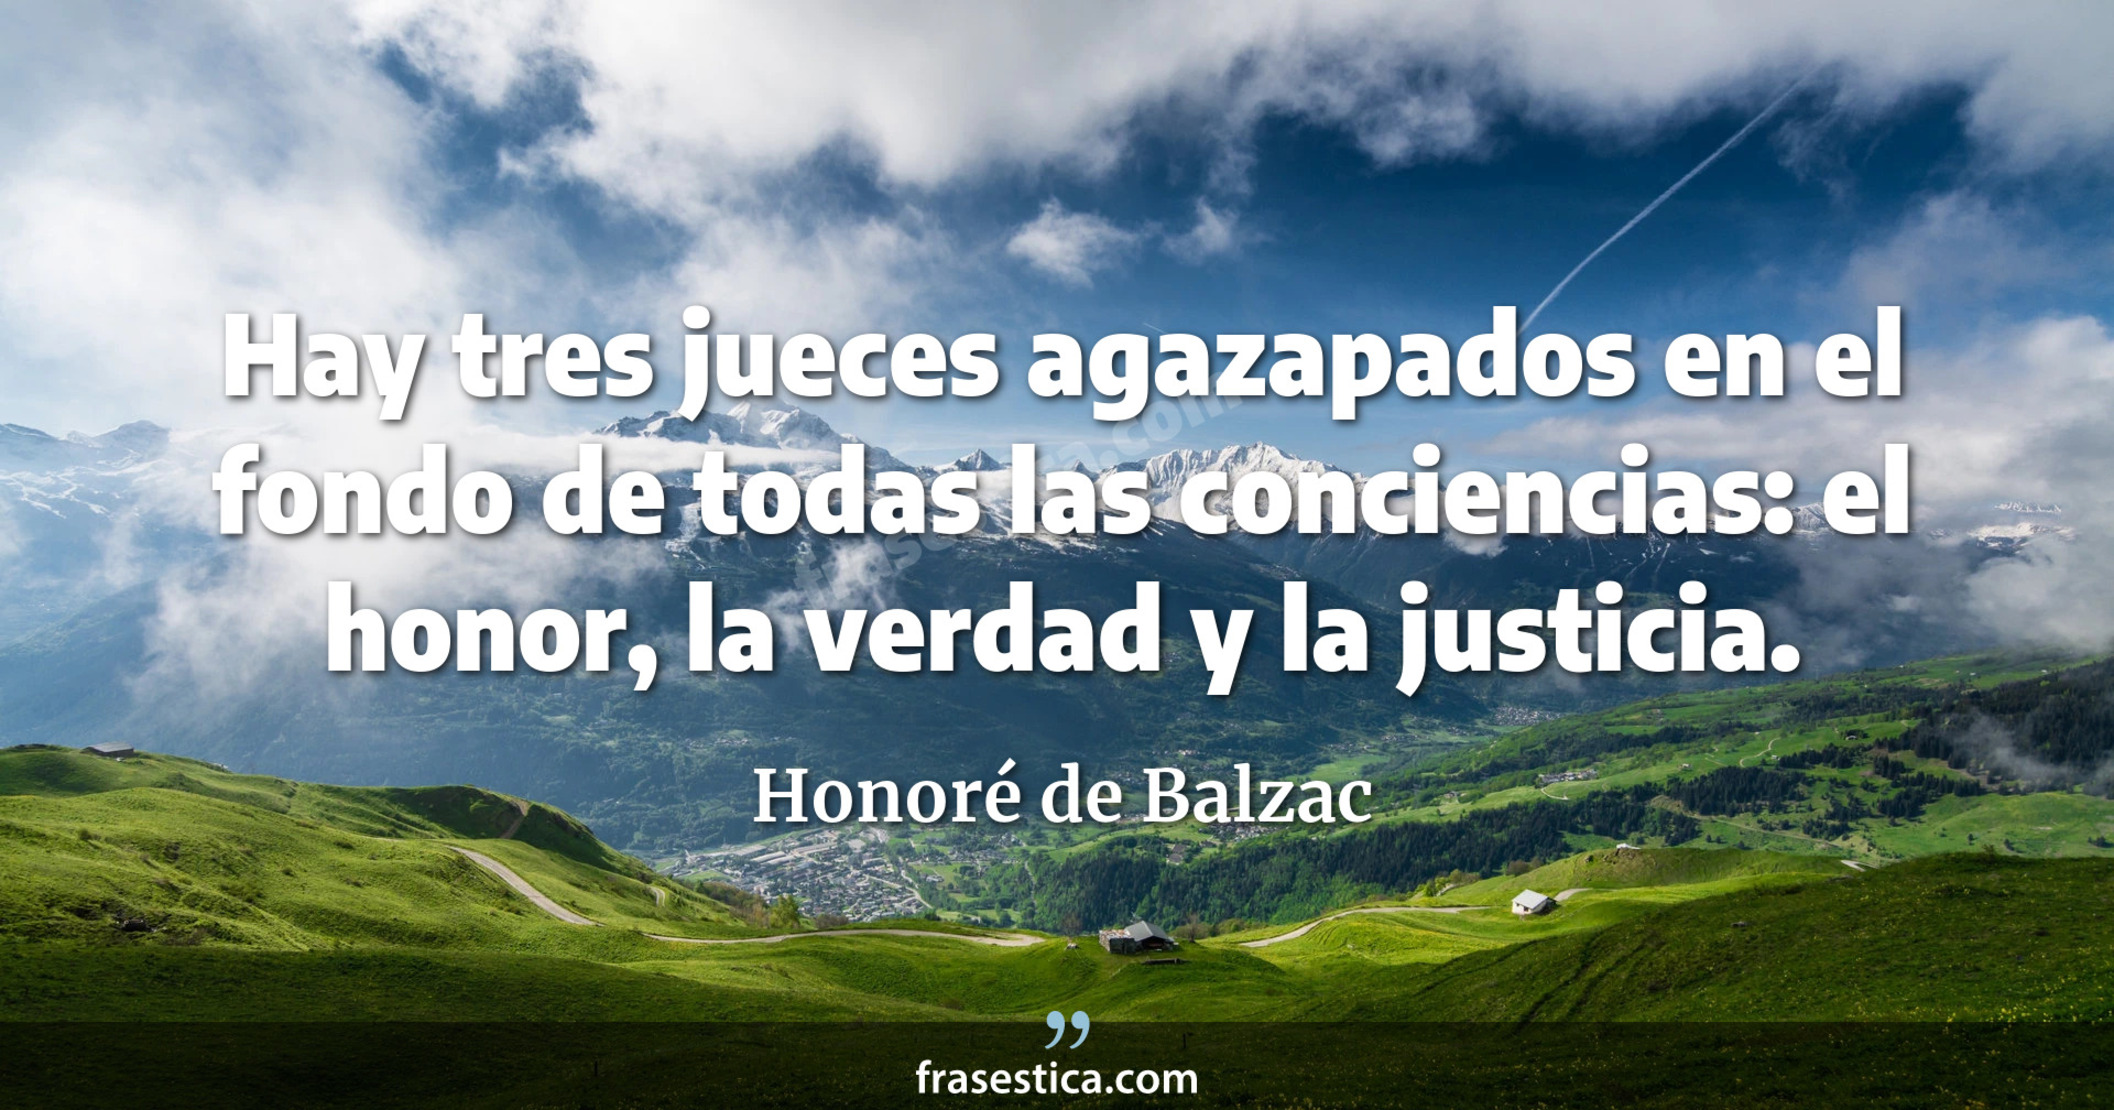 Hay tres jueces agazapados en el fondo de todas las conciencias: el honor, la verdad y la justicia. - Honoré de Balzac